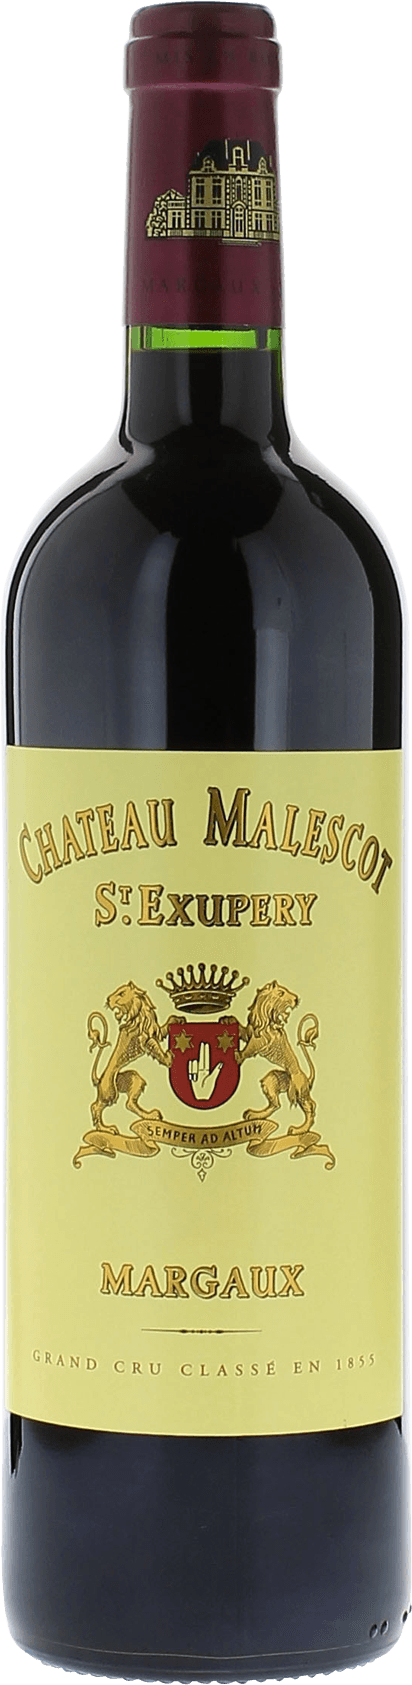 Malescot saint exupery 2001 3me Grand cru class Margaux, Bordeaux rouge